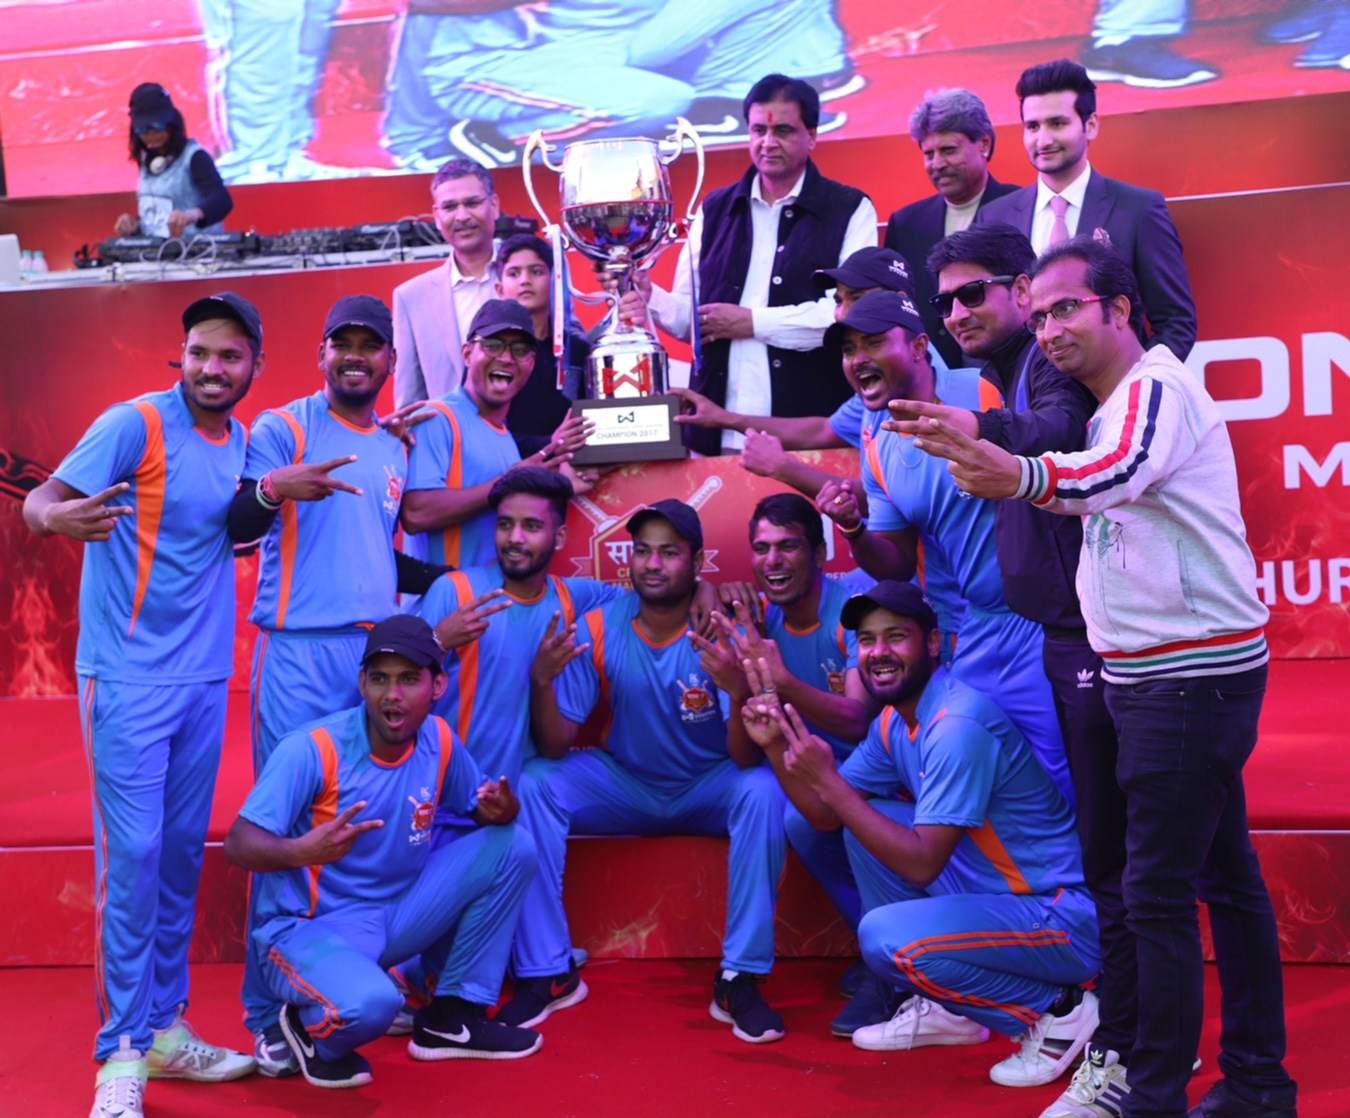 Jaipur lifts Wonder: Saath 7 Cricket Mohatsav trophy beating Ahmedabad by 23 runs